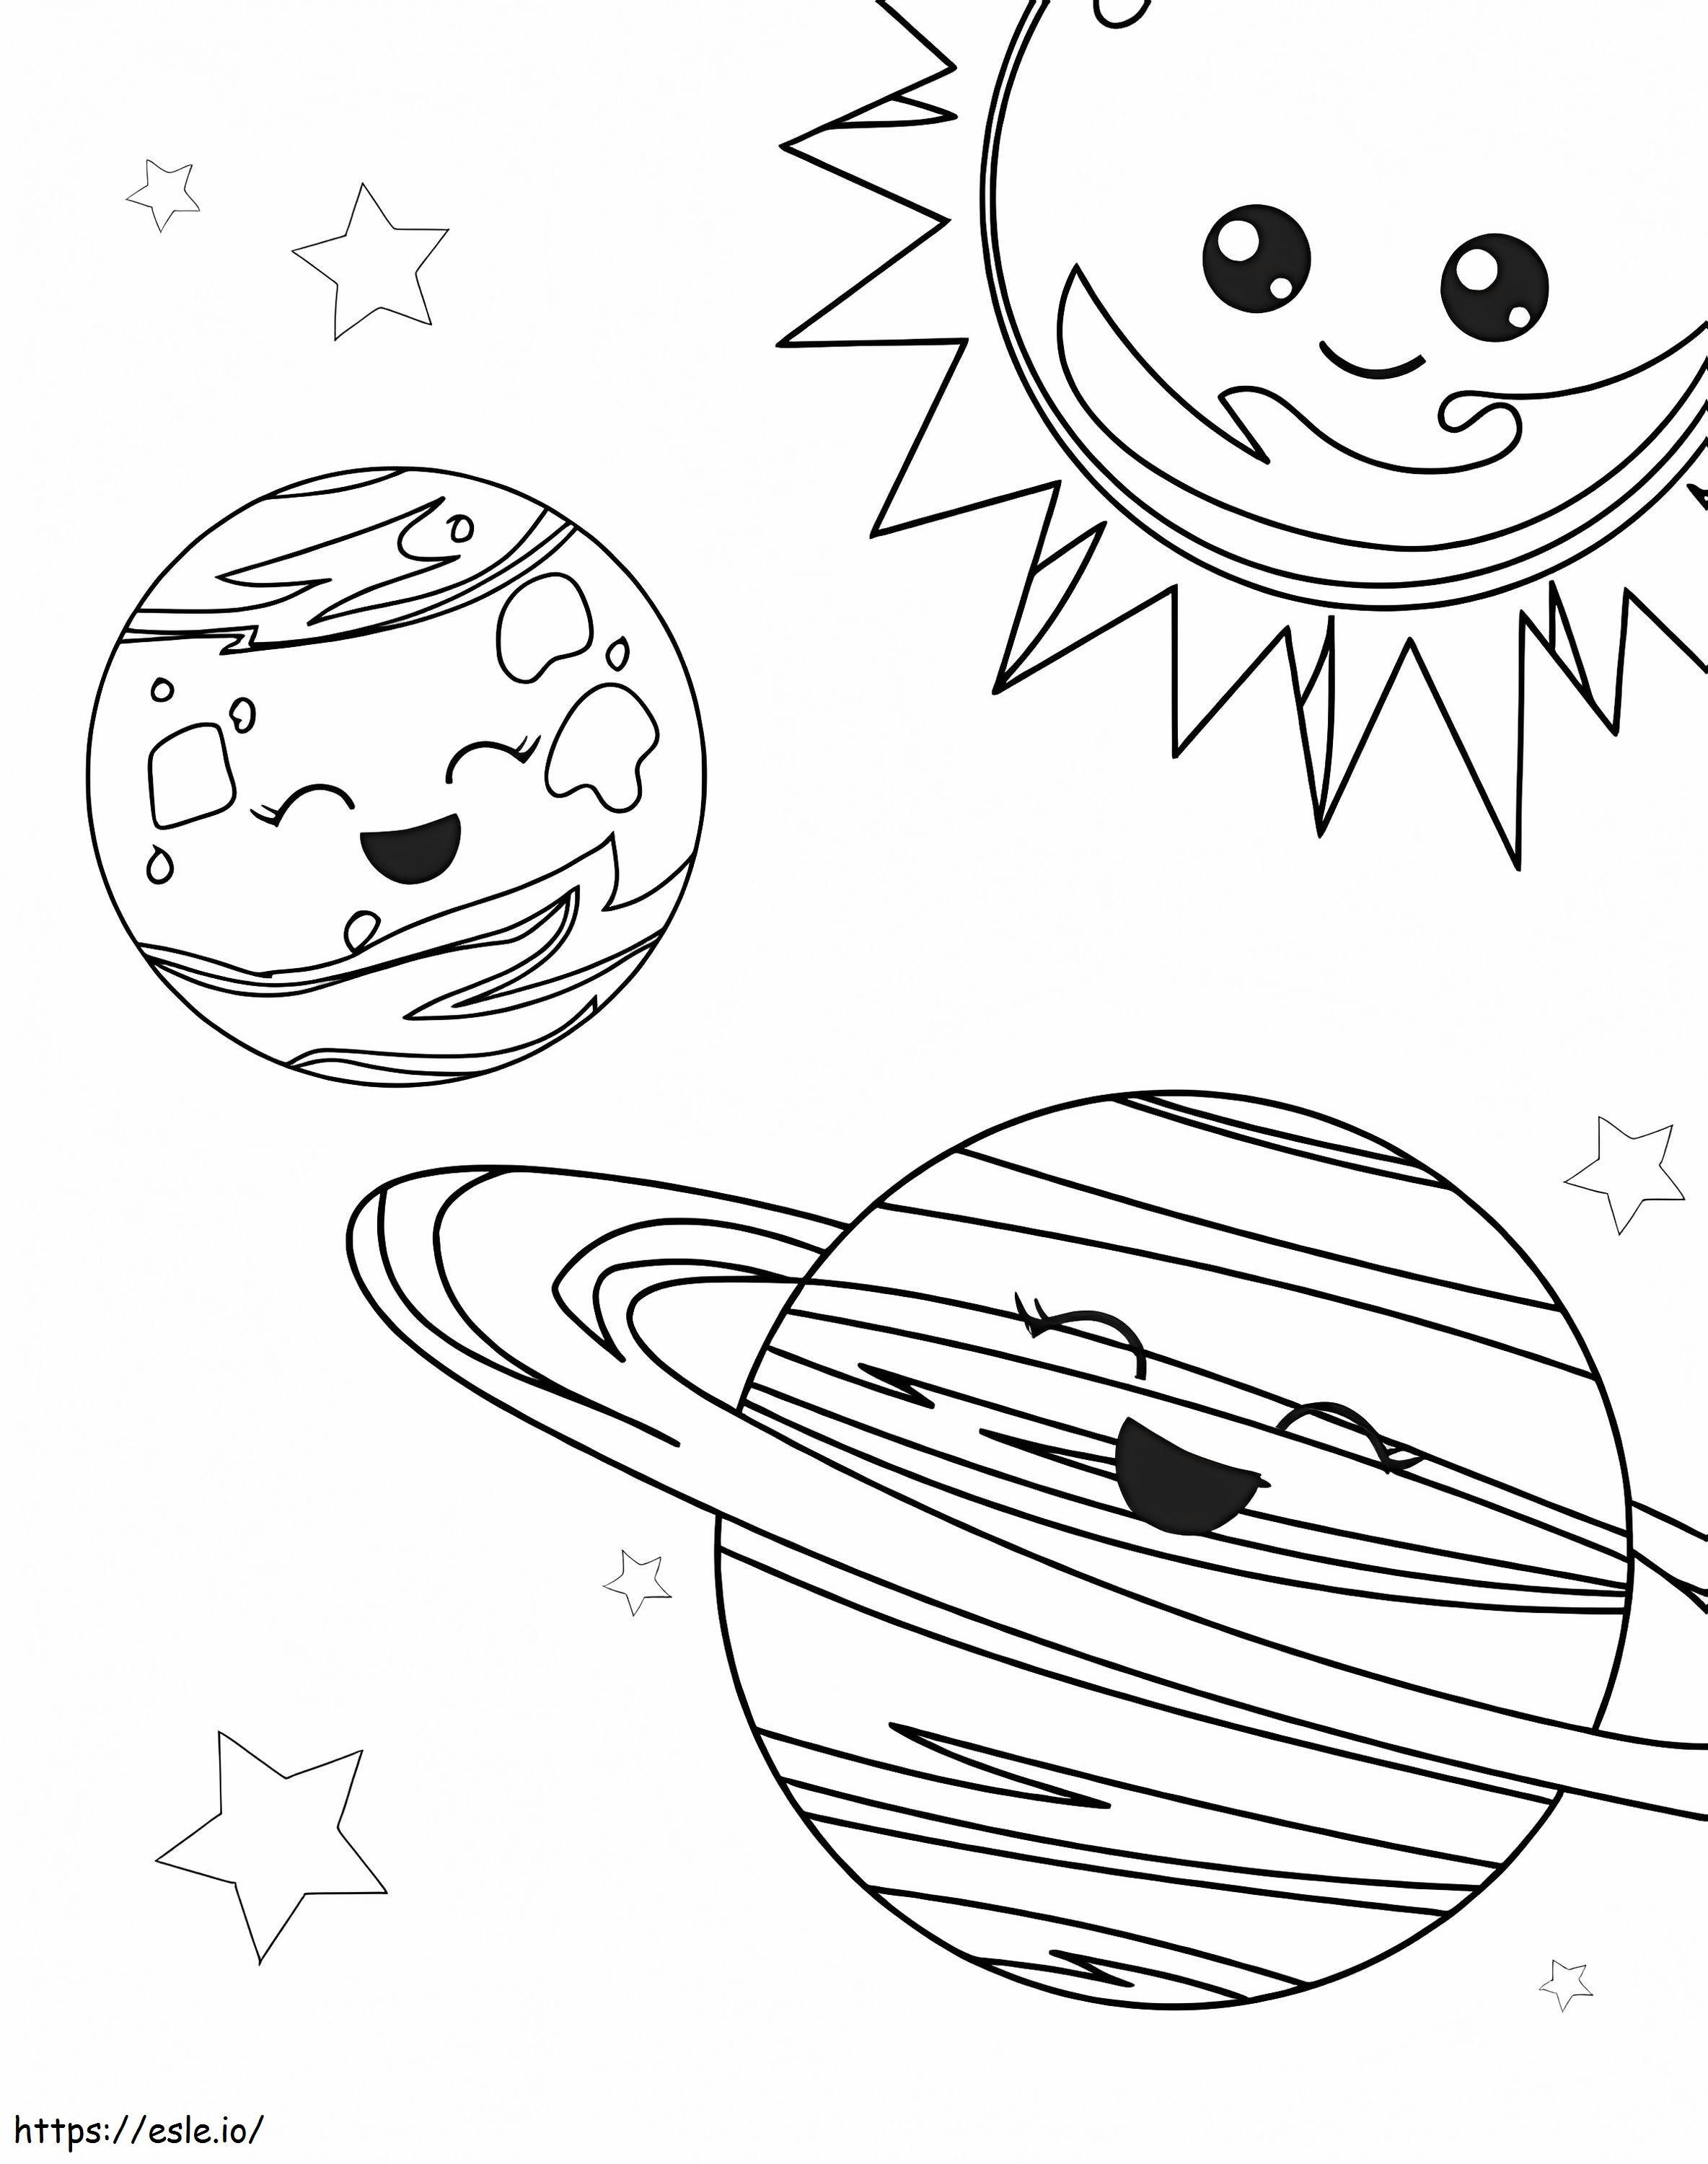 Trei planete distractive în spațiu de colorat